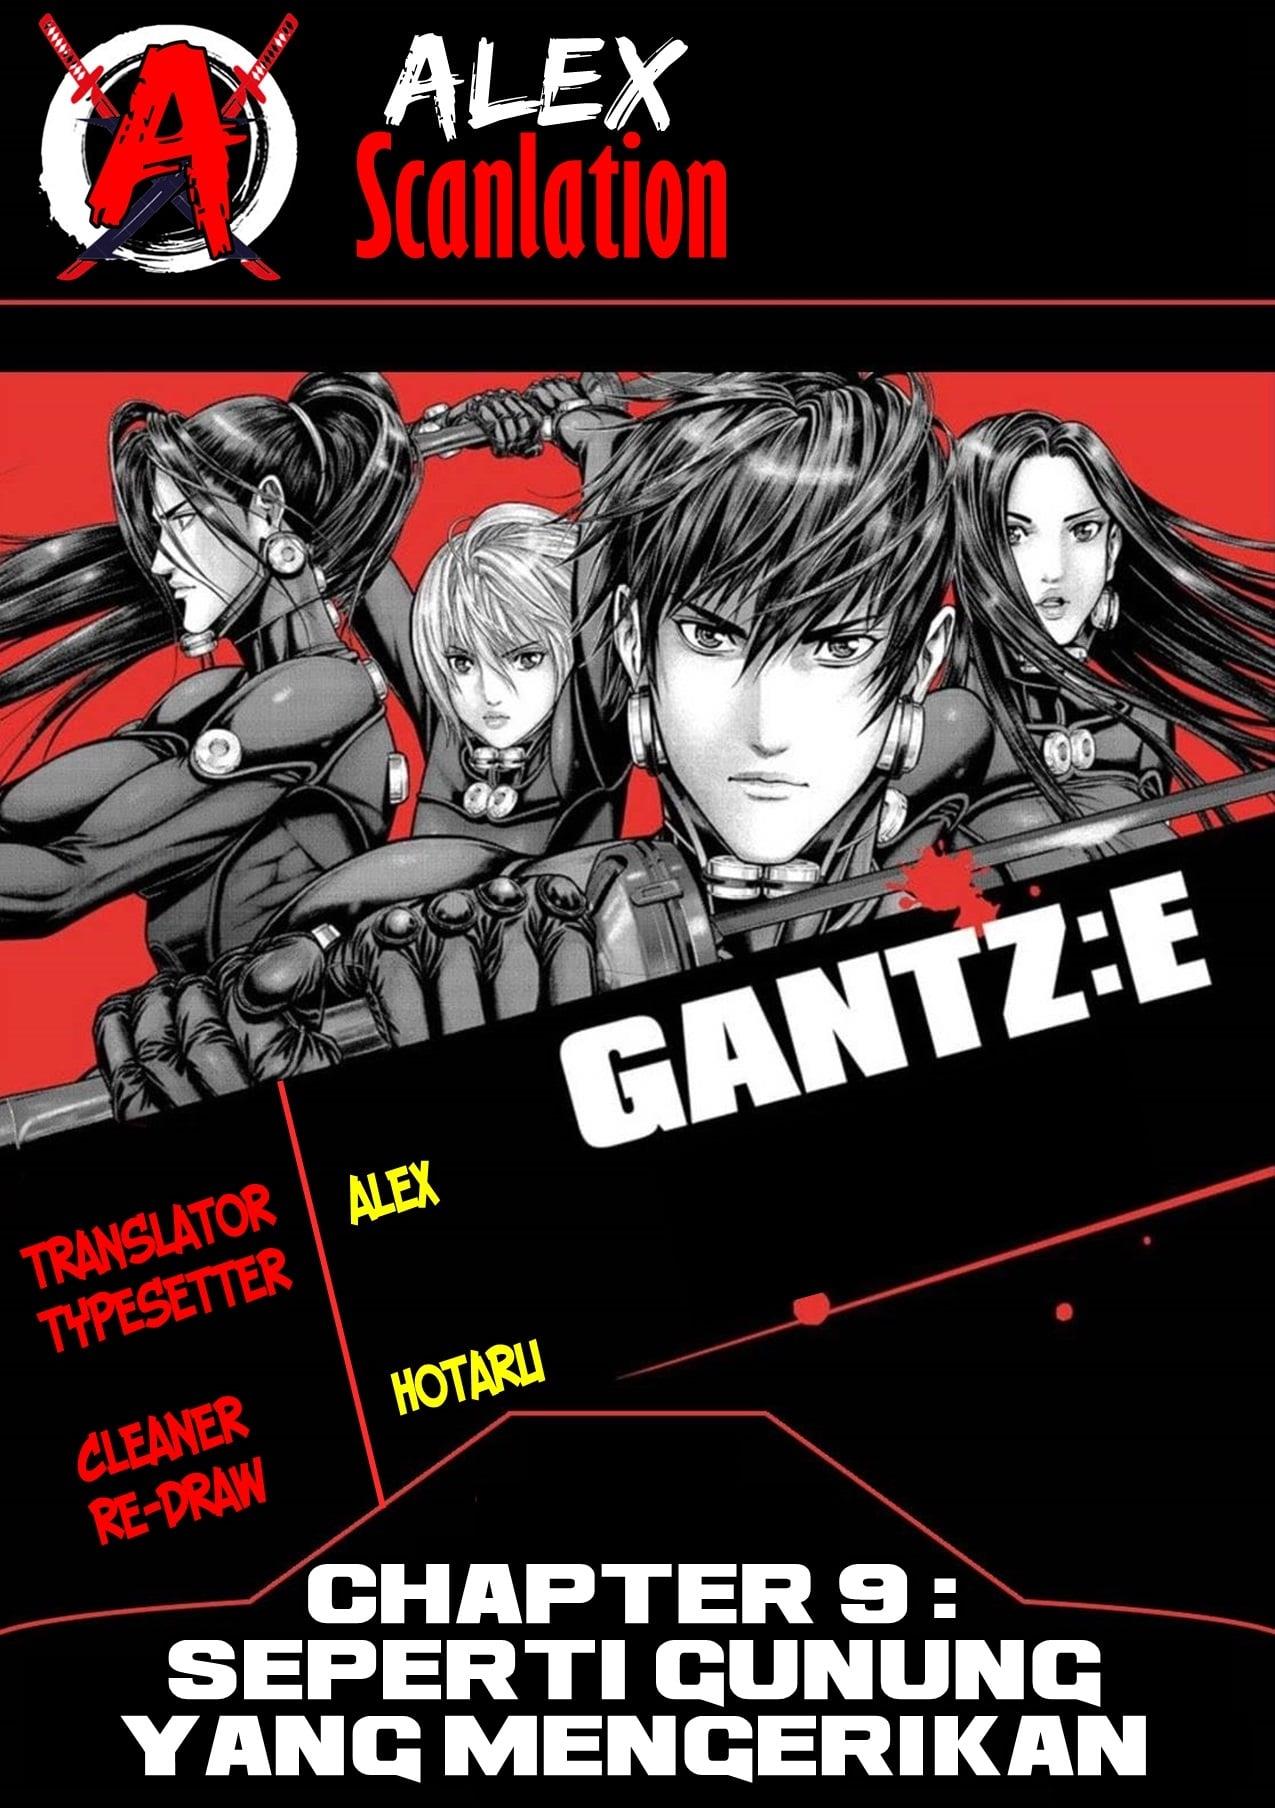 Gantz:E Chapter 9